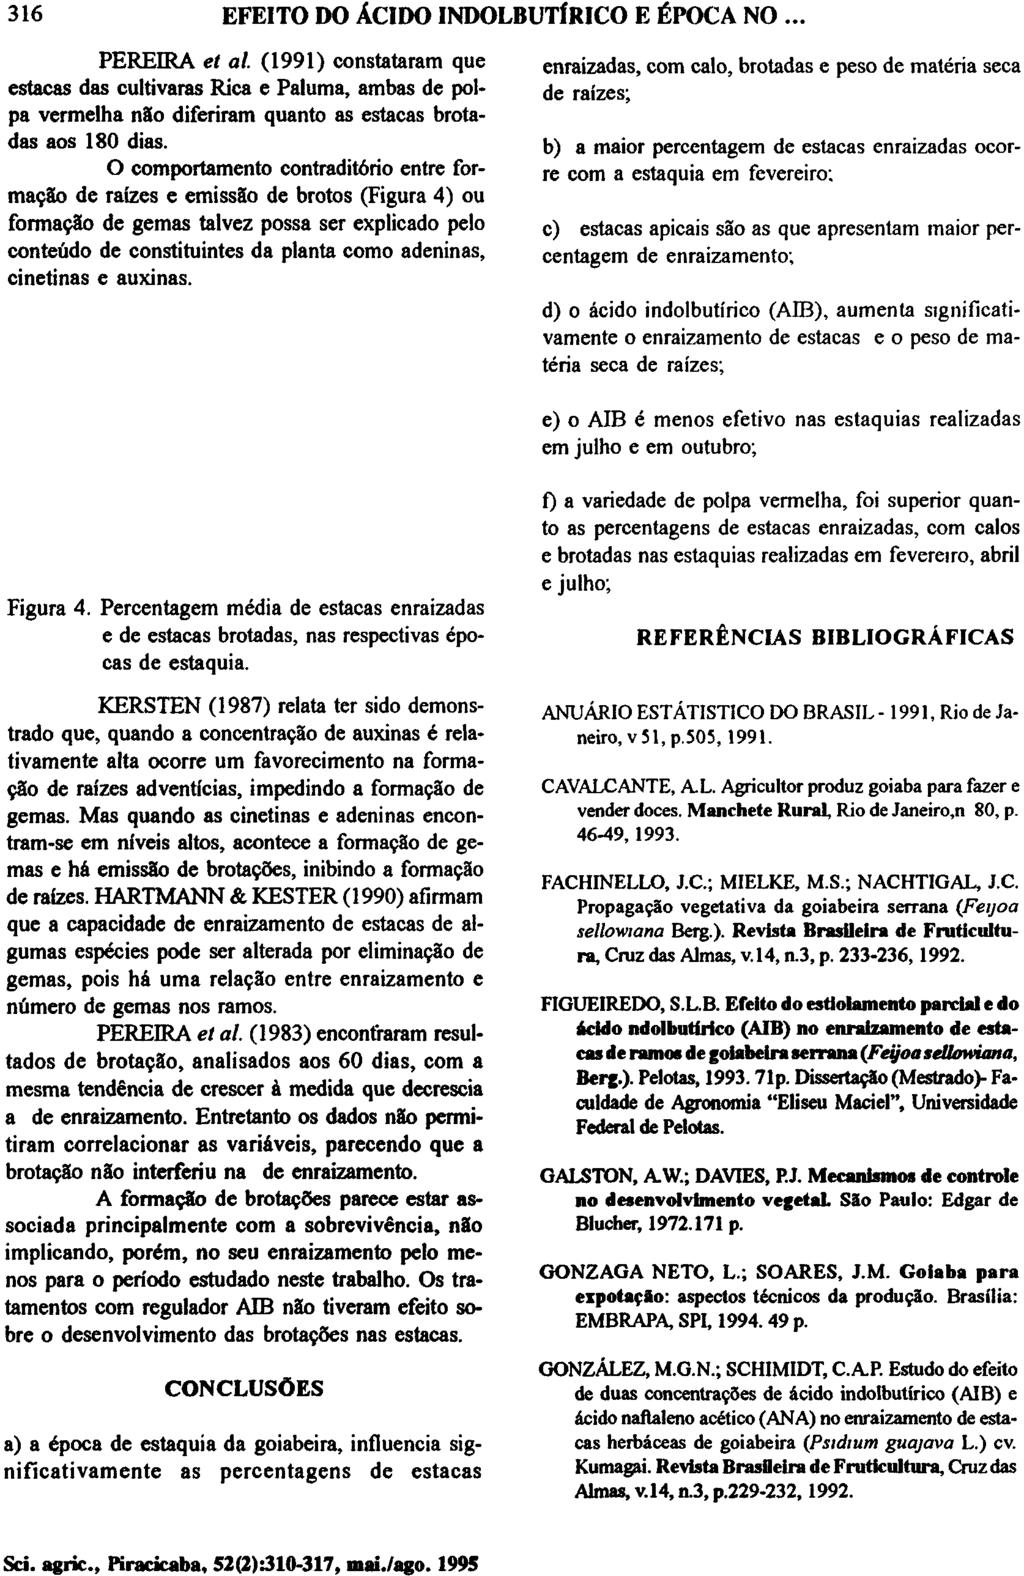 PEREIRA et al. (1991) constataram que estacas das cultivaras Rica e Paluma, ambas de polpa vermelha não diferiram quanto as estacas brotadas aos 180 dias.